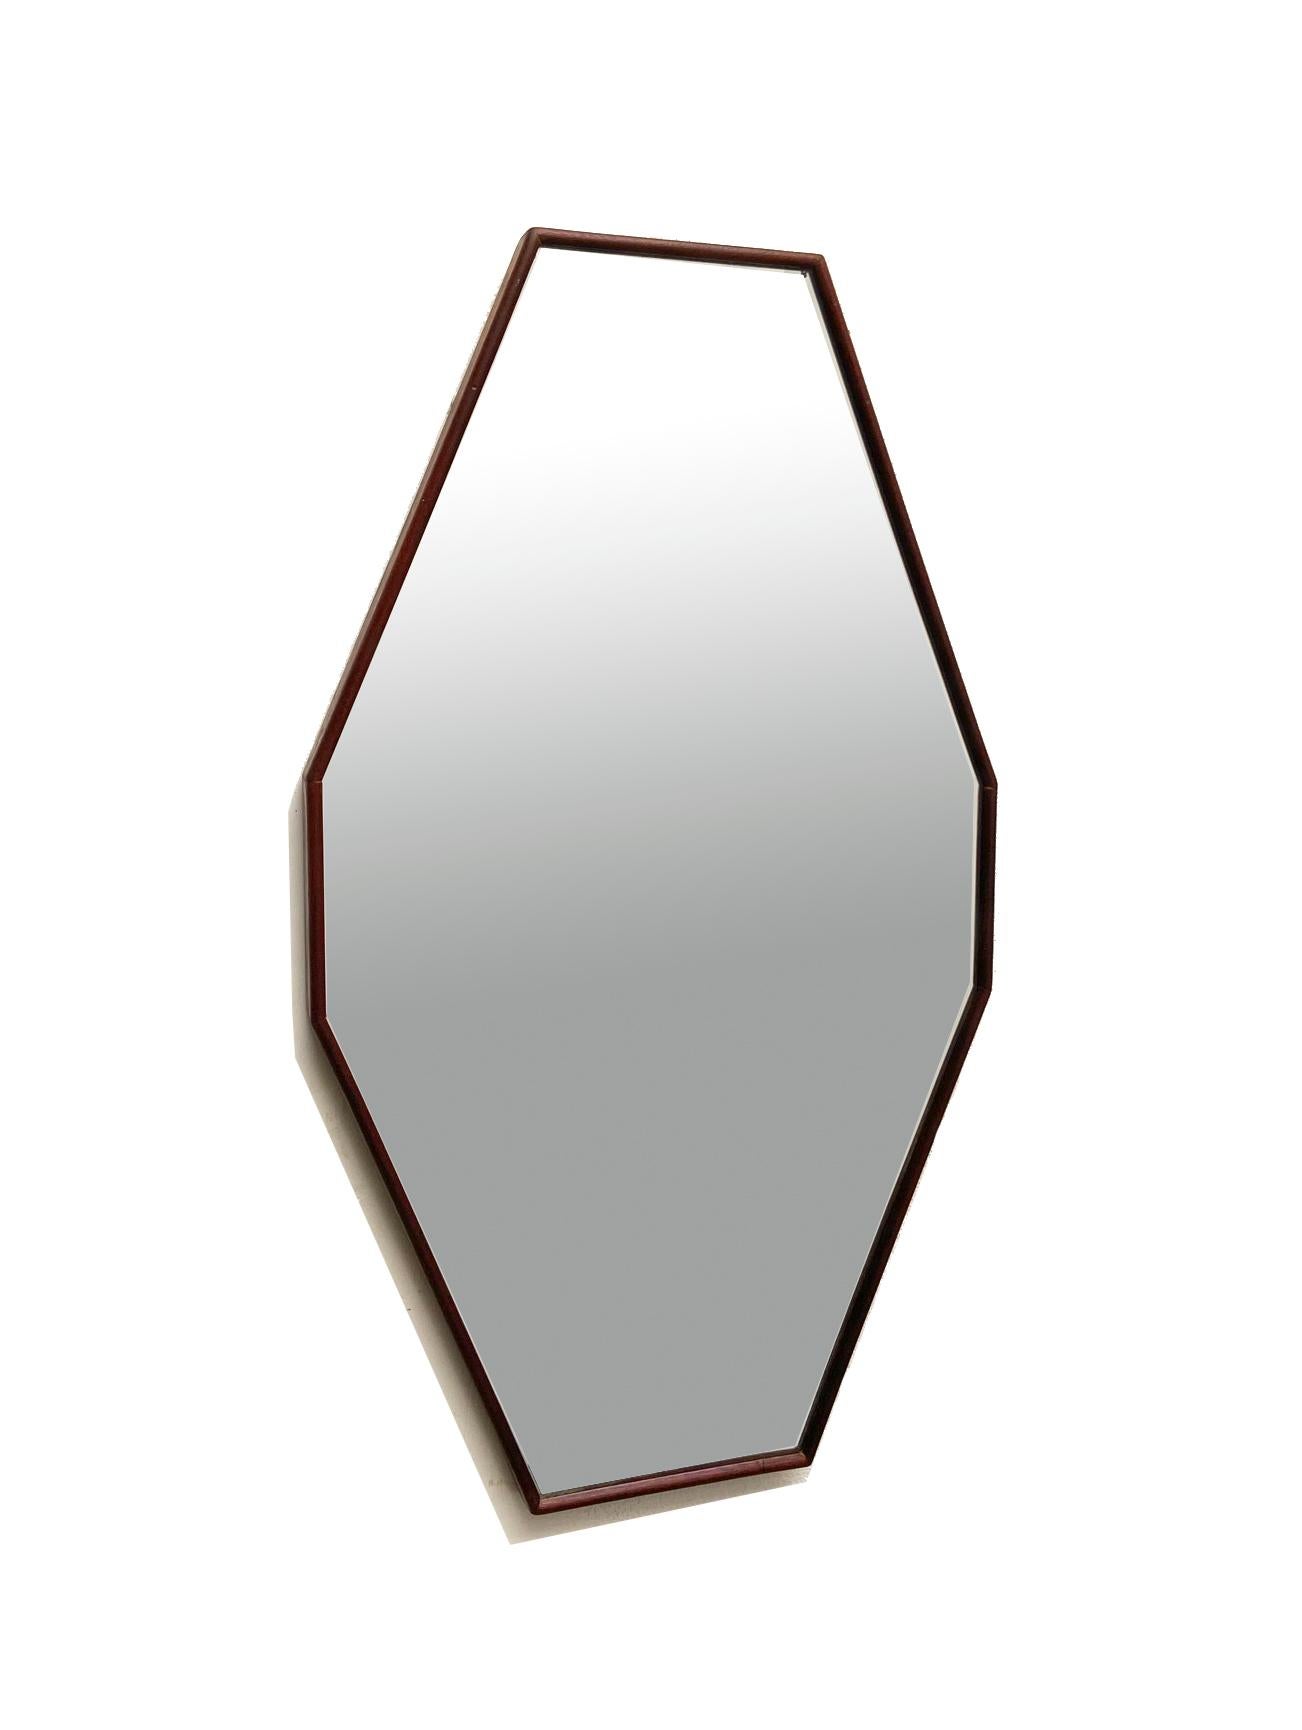 Italienischer Spiegel aus den 1960er Jahren mit länglicher, achteckiger Form. 
Rahmen aus Teakholz, originaler Silberspiegel. 
Sehr guter Zustand. Natürliche Zeichen der Alterung.